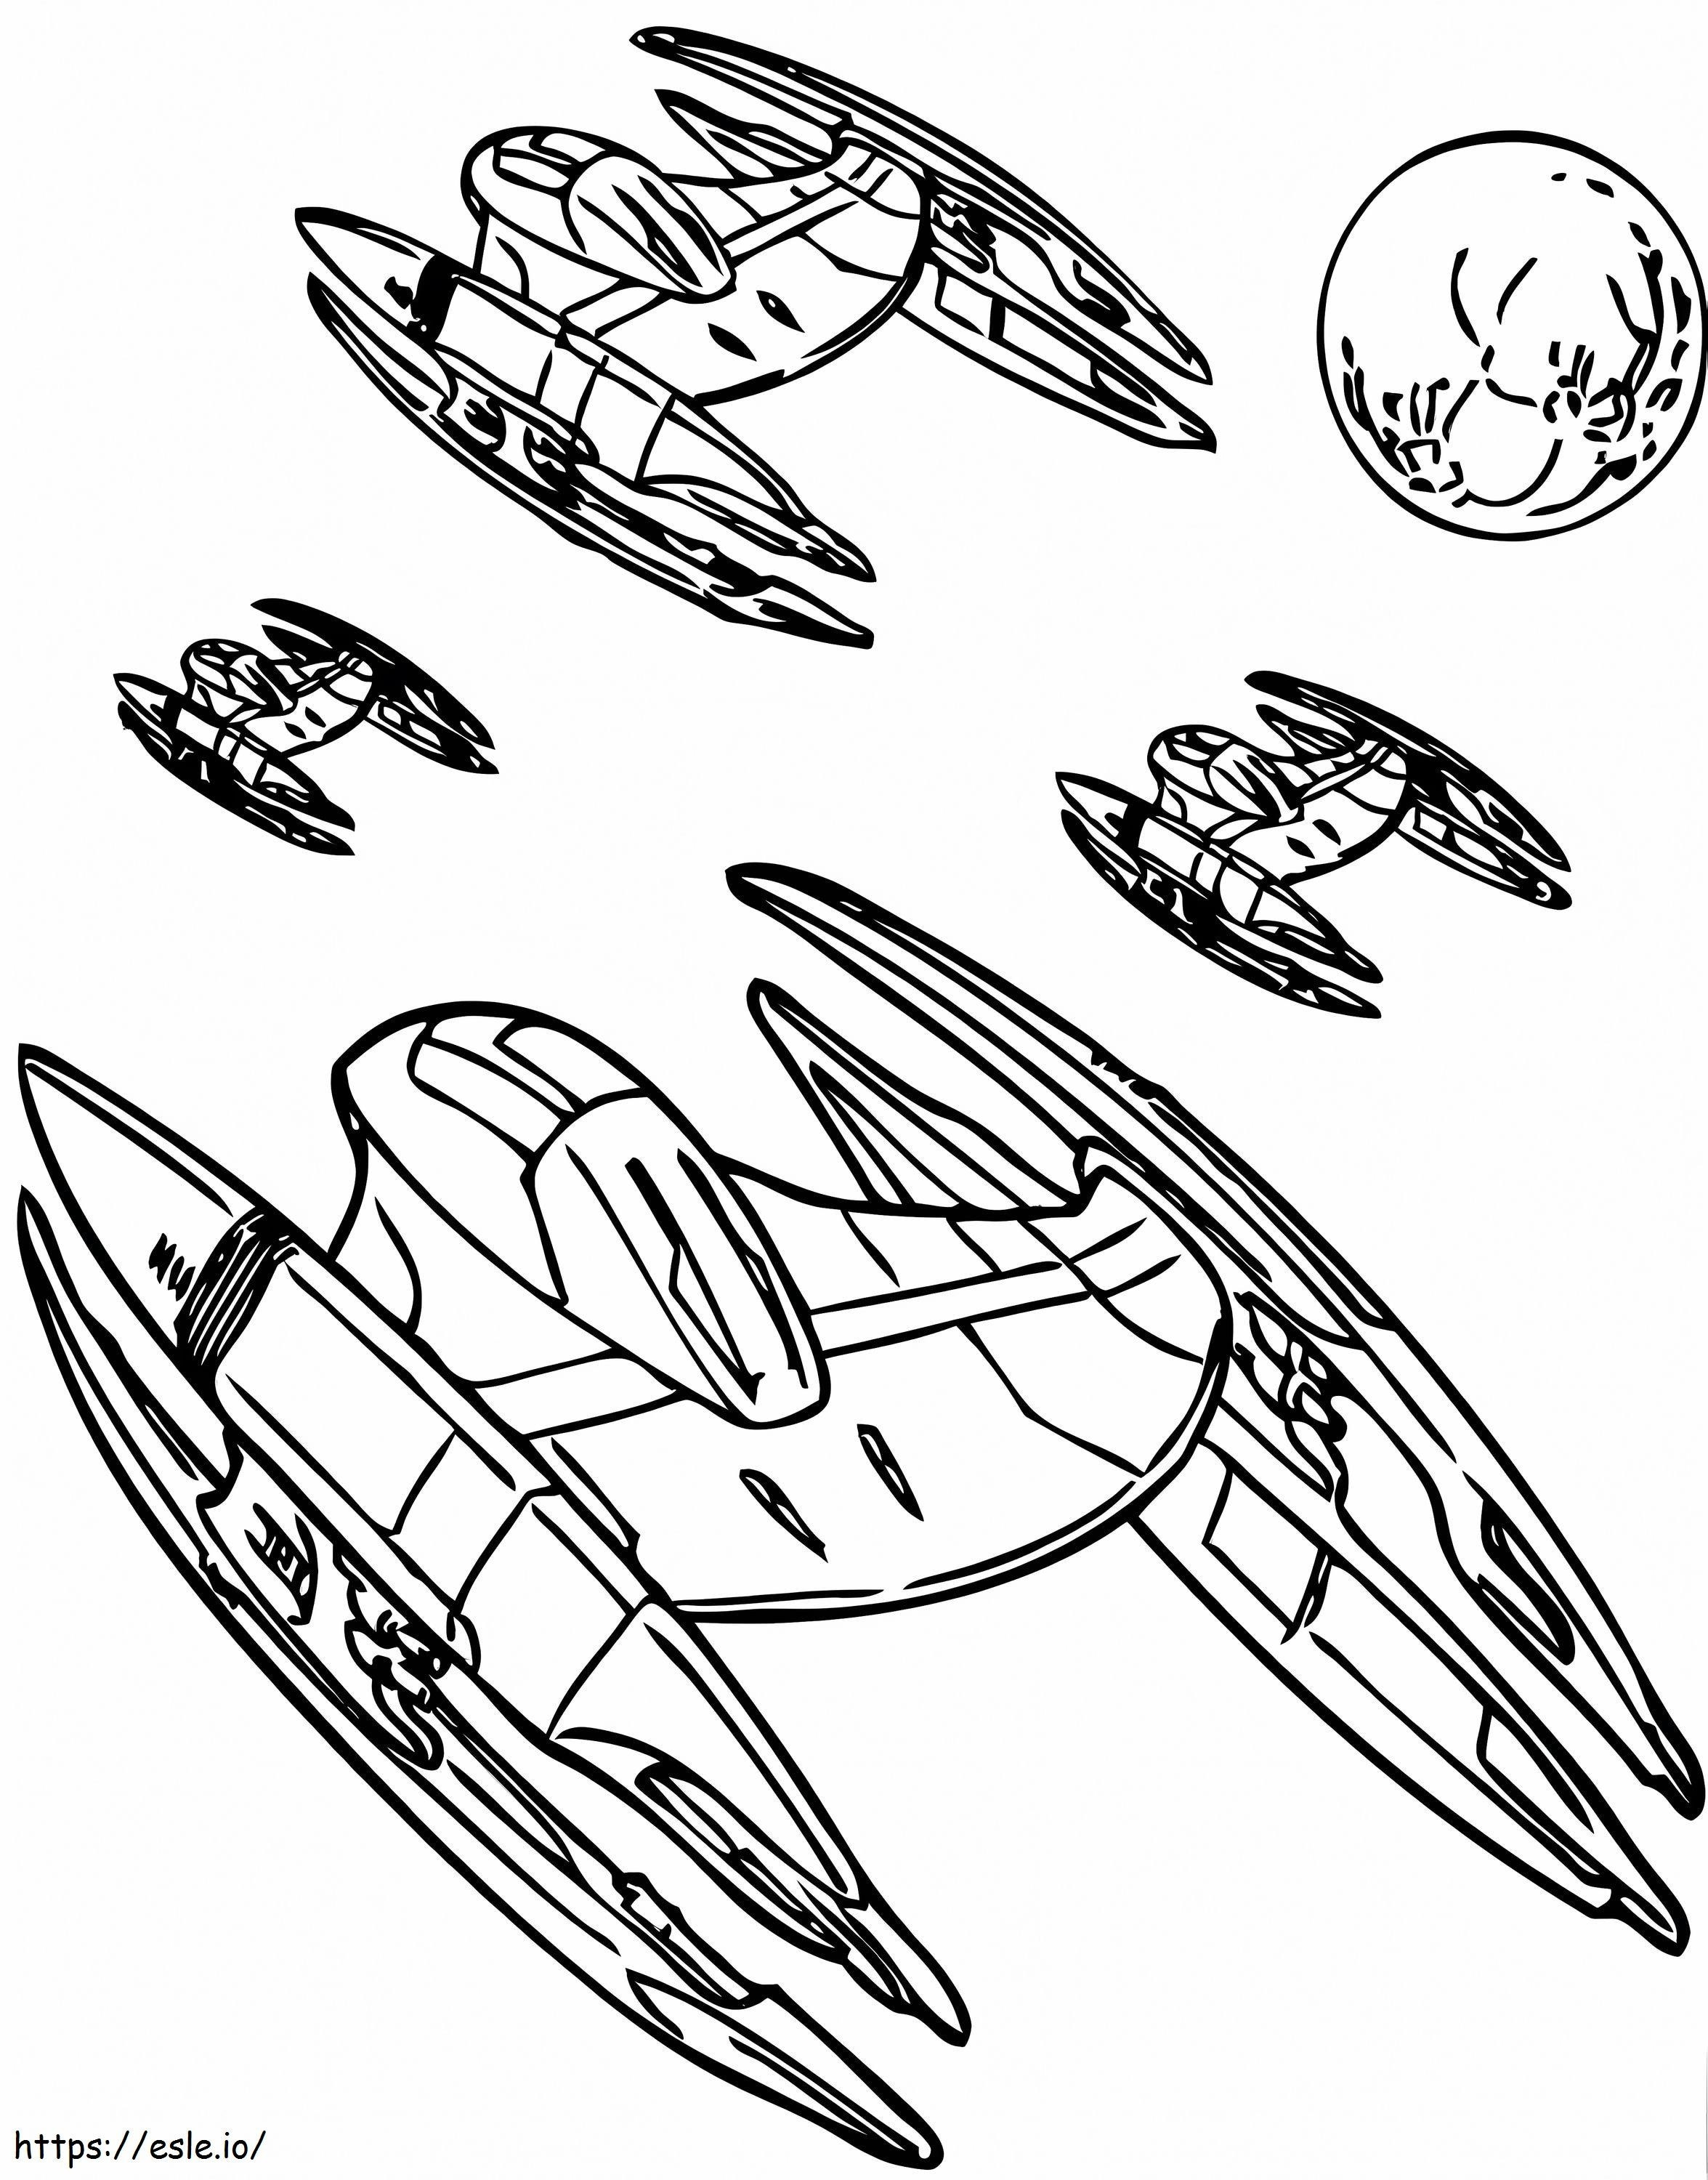 Naves espaciales de la Federación de Comercio para colorear